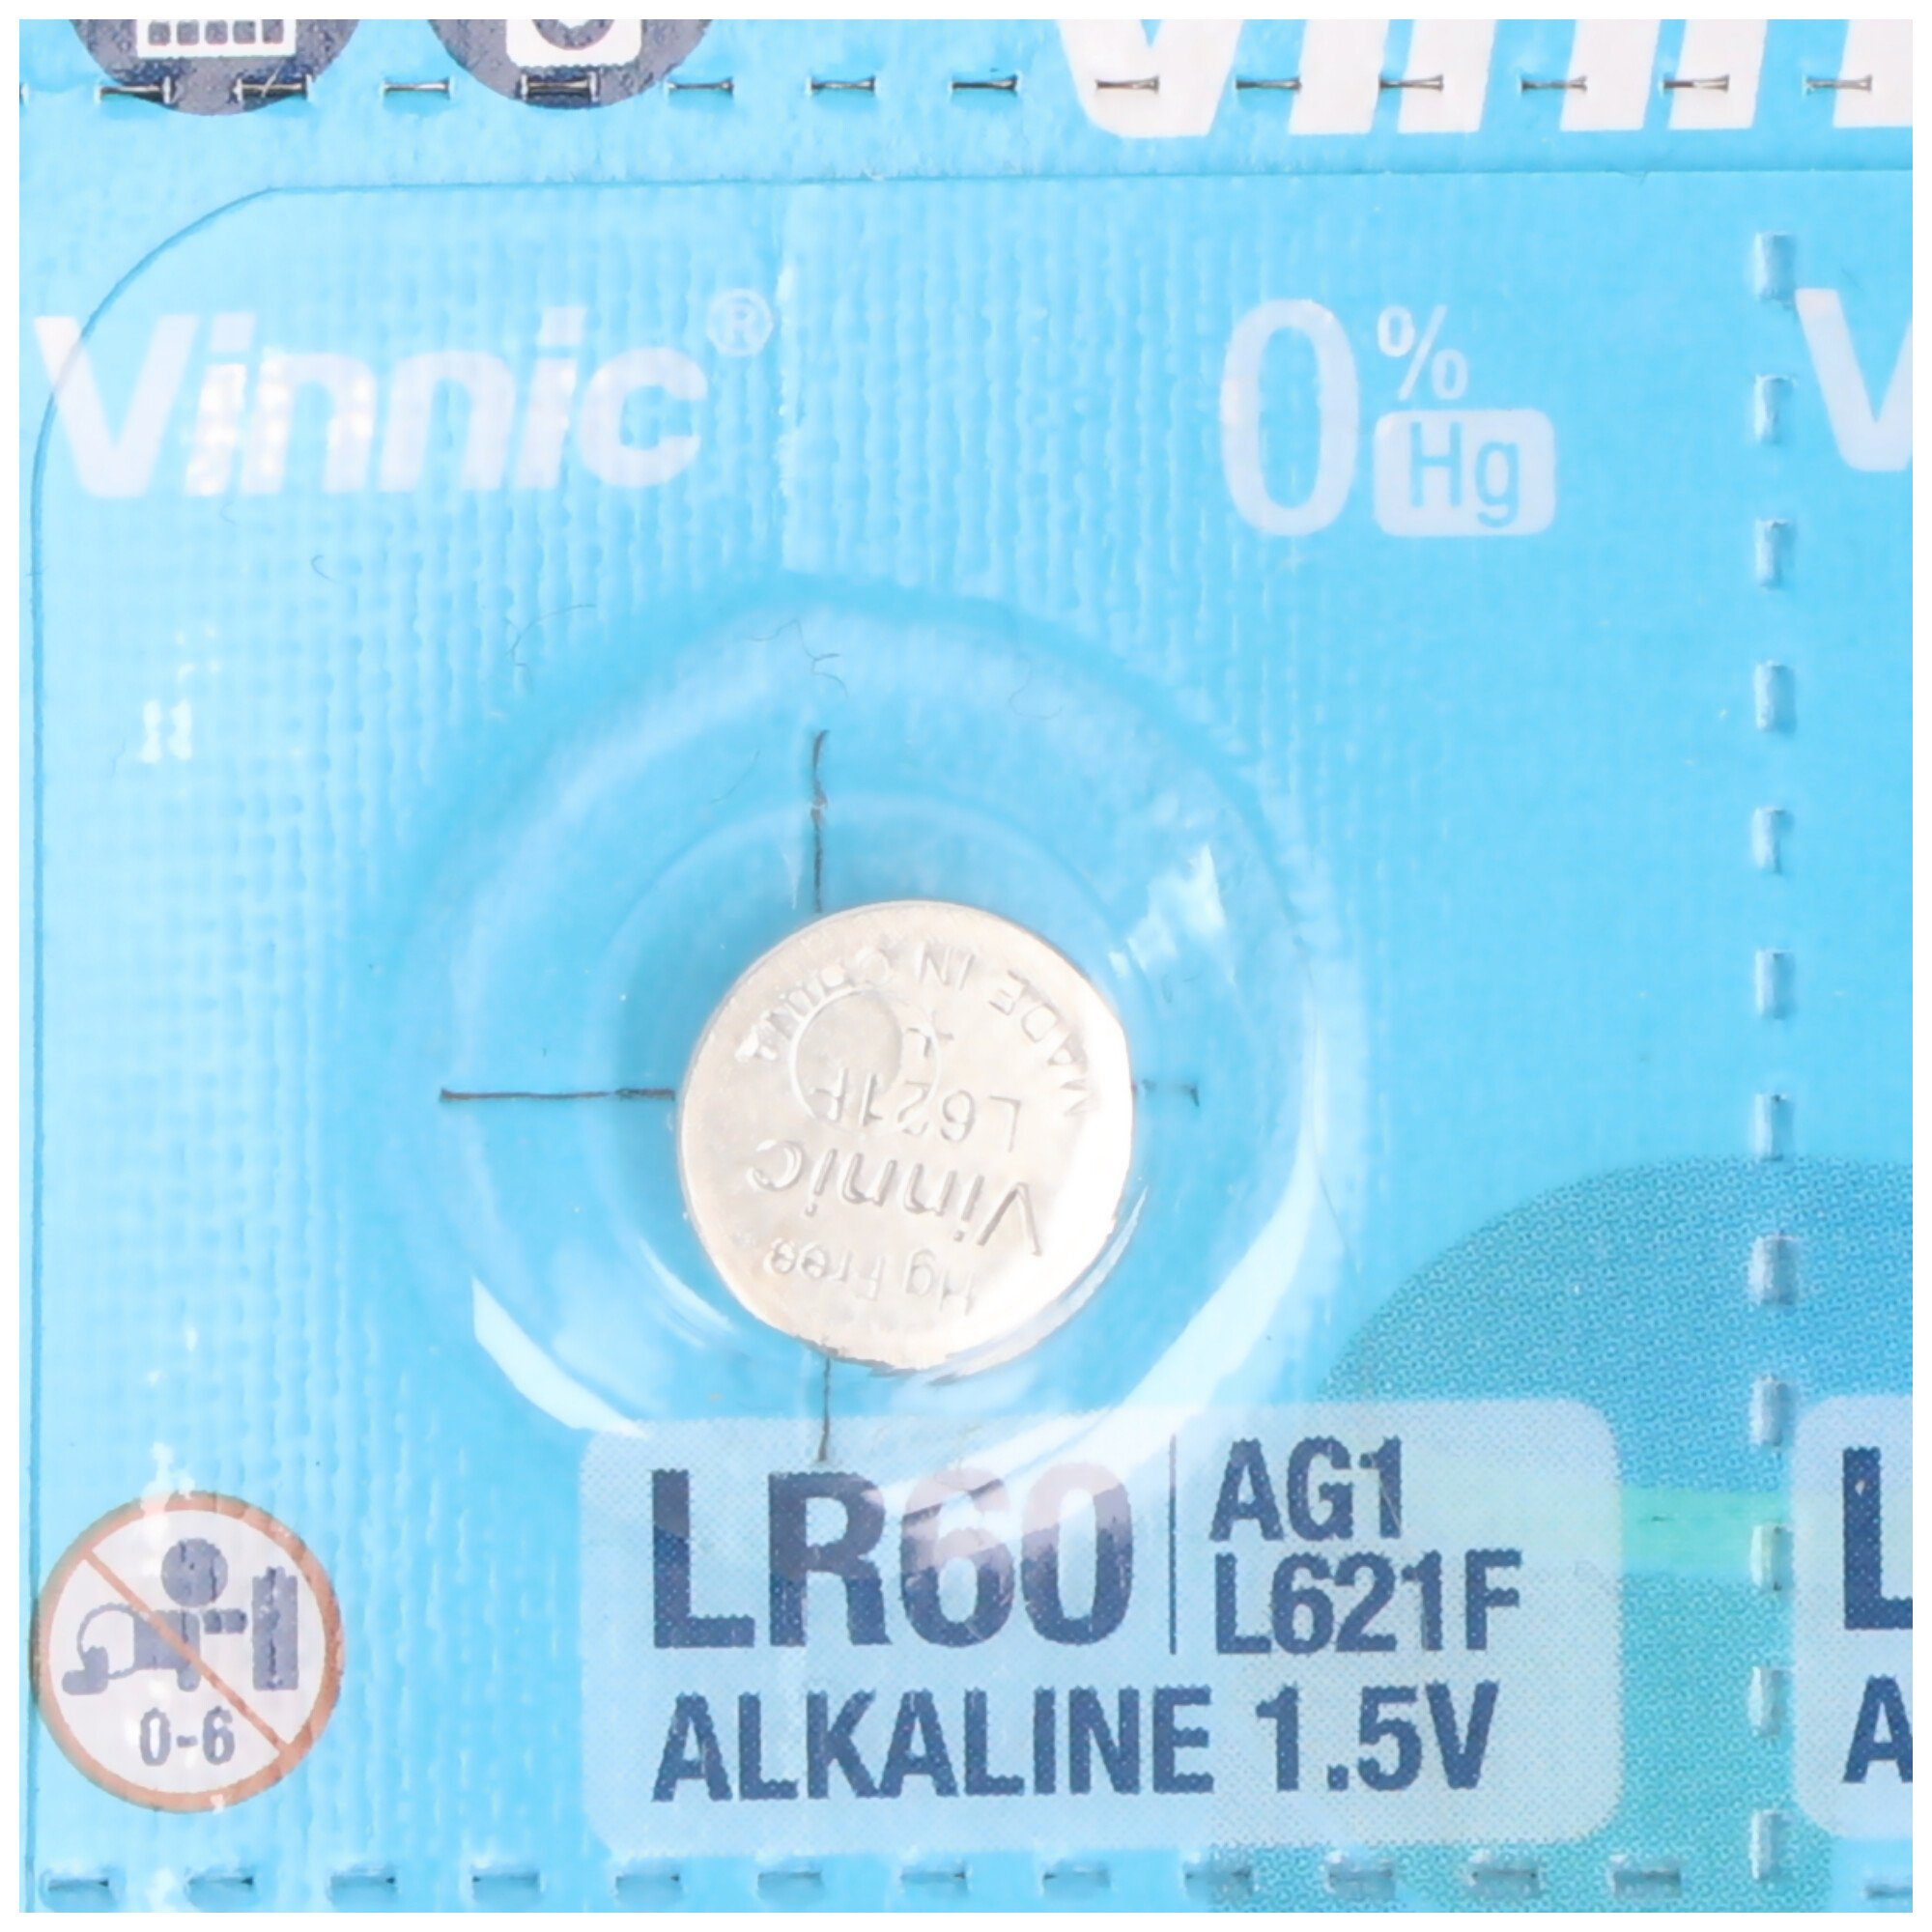 Knopfzelle G1, Alkaline-Einweg-Batterie Type AG1, LR60, L621, Stück VINNIC 10 AG1 6,8x6